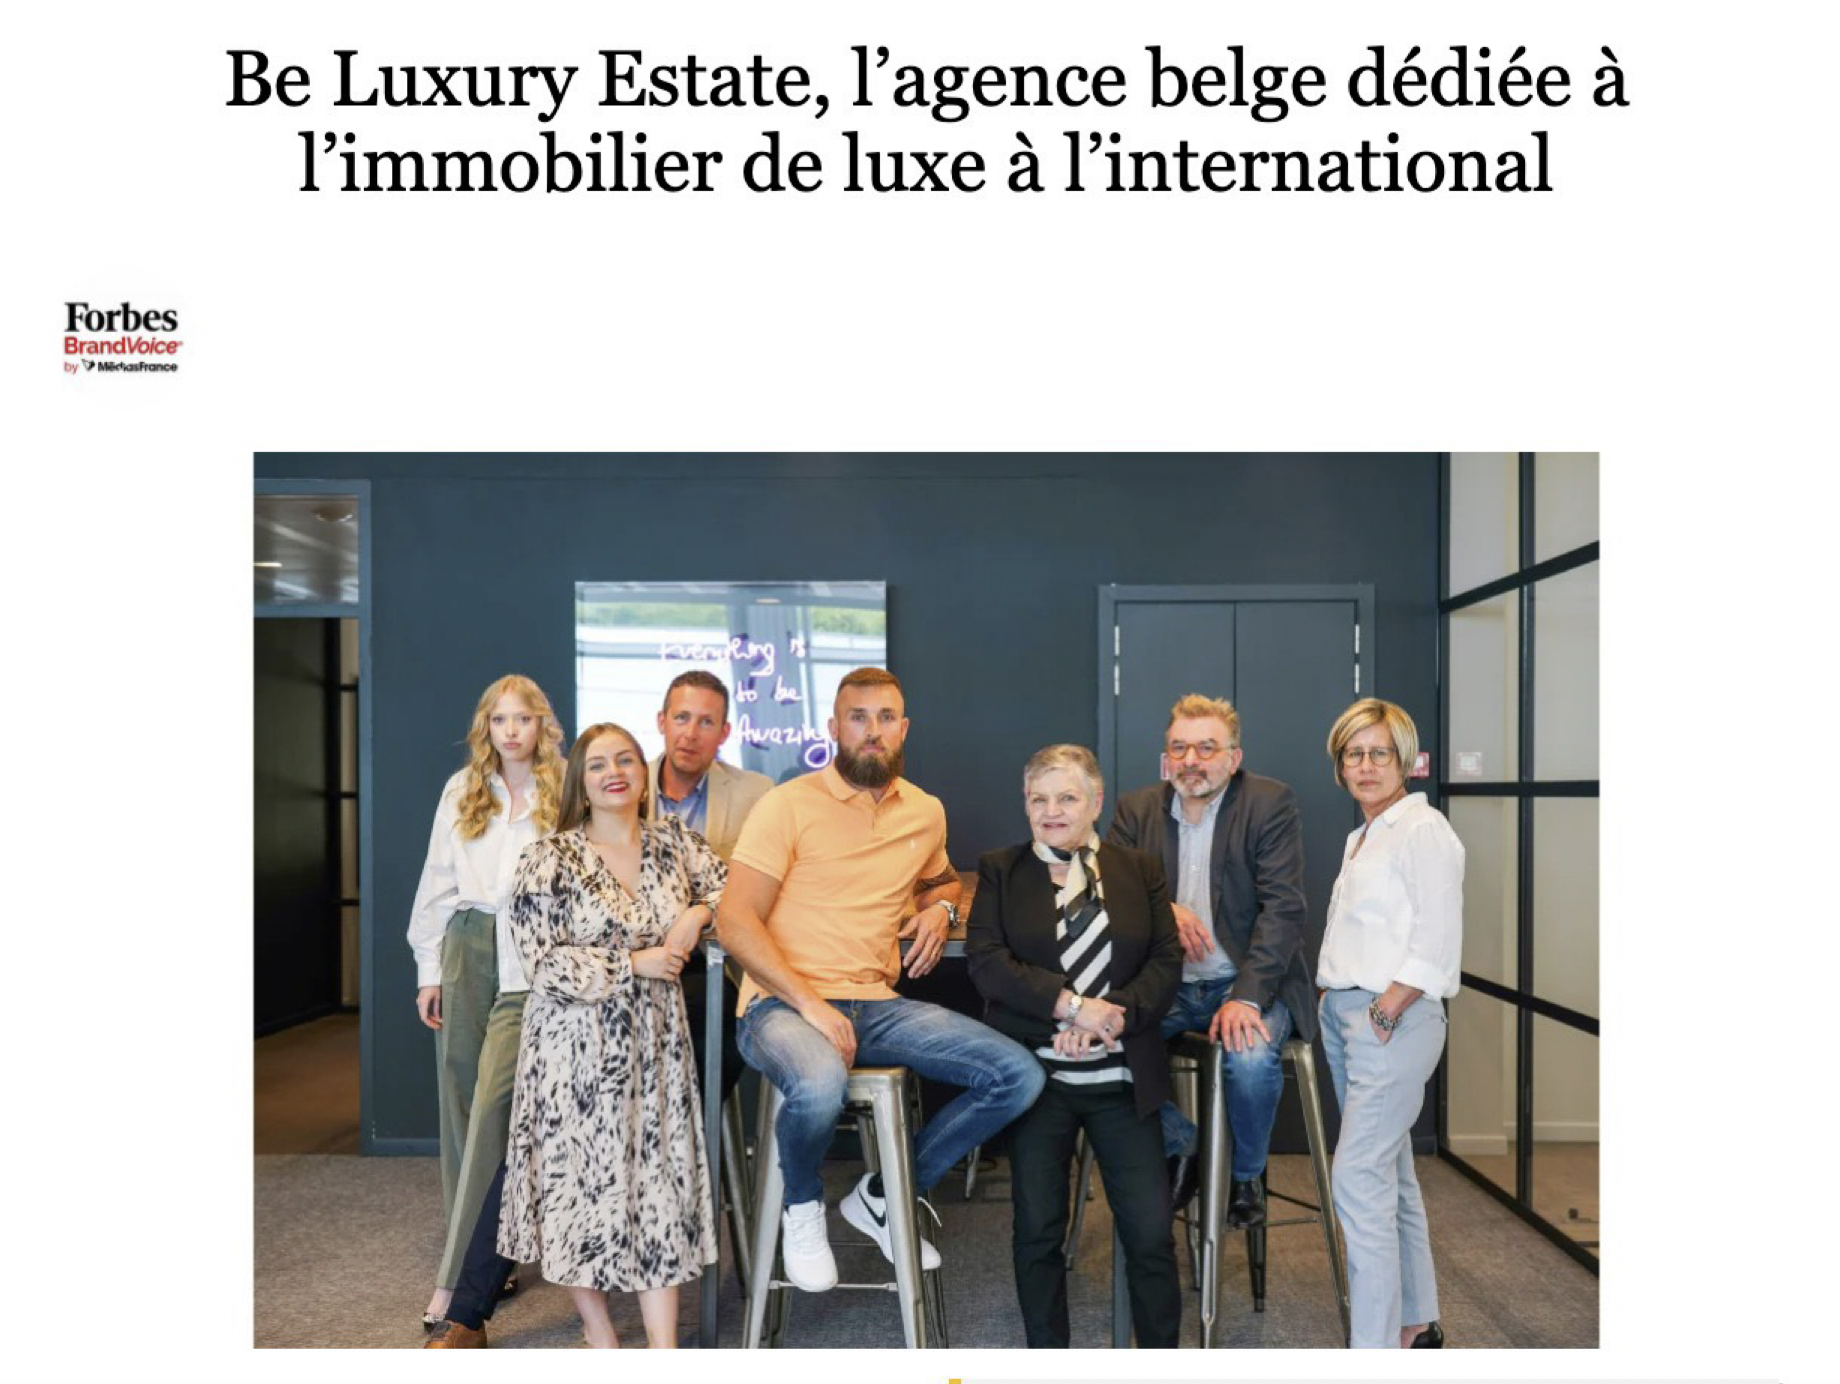 Forbes reconnait Be Luxury comme agence haut-de-gamme